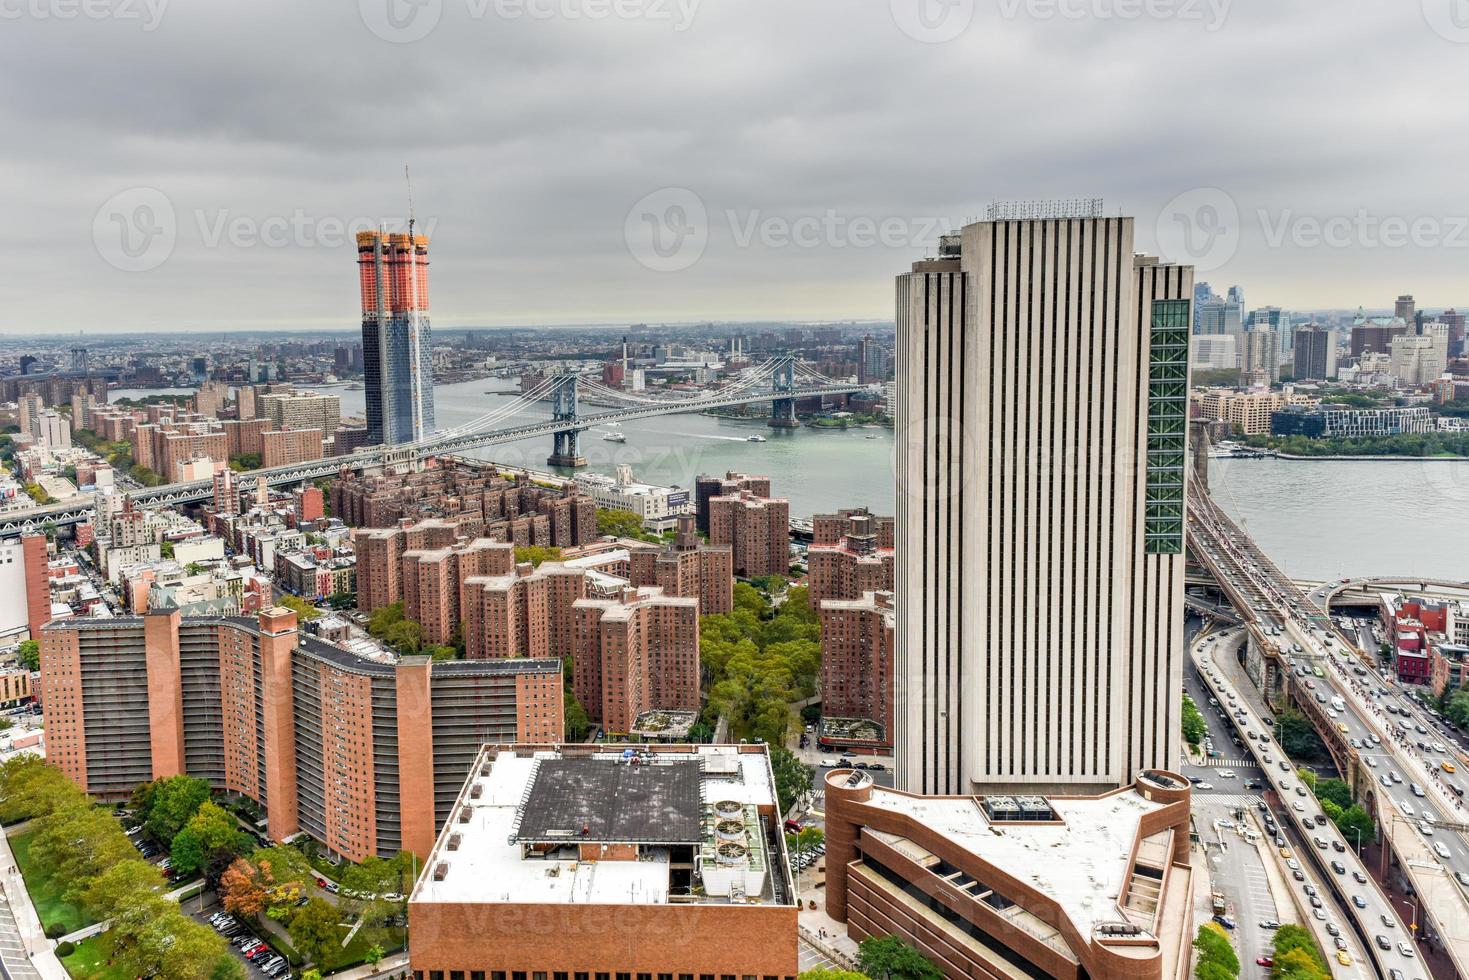 vue aérienne de la ligne d'horizon de la ville de new york photo